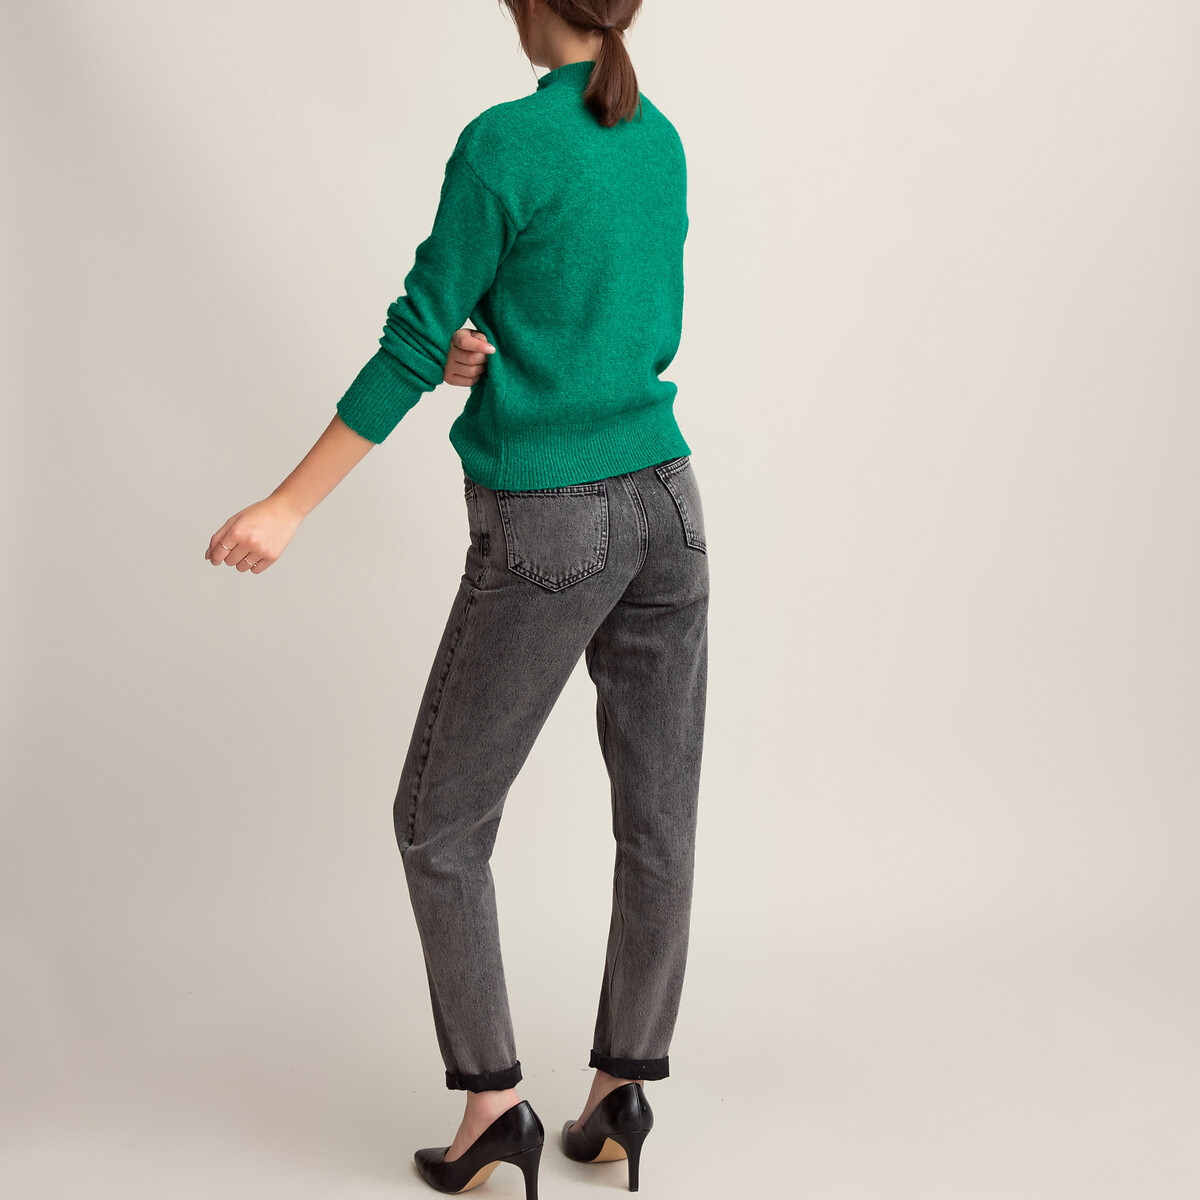 Пуловер La Redoute С воротником-стойкой пушистый трикотаж XL зеленый, размер XL - фото 4